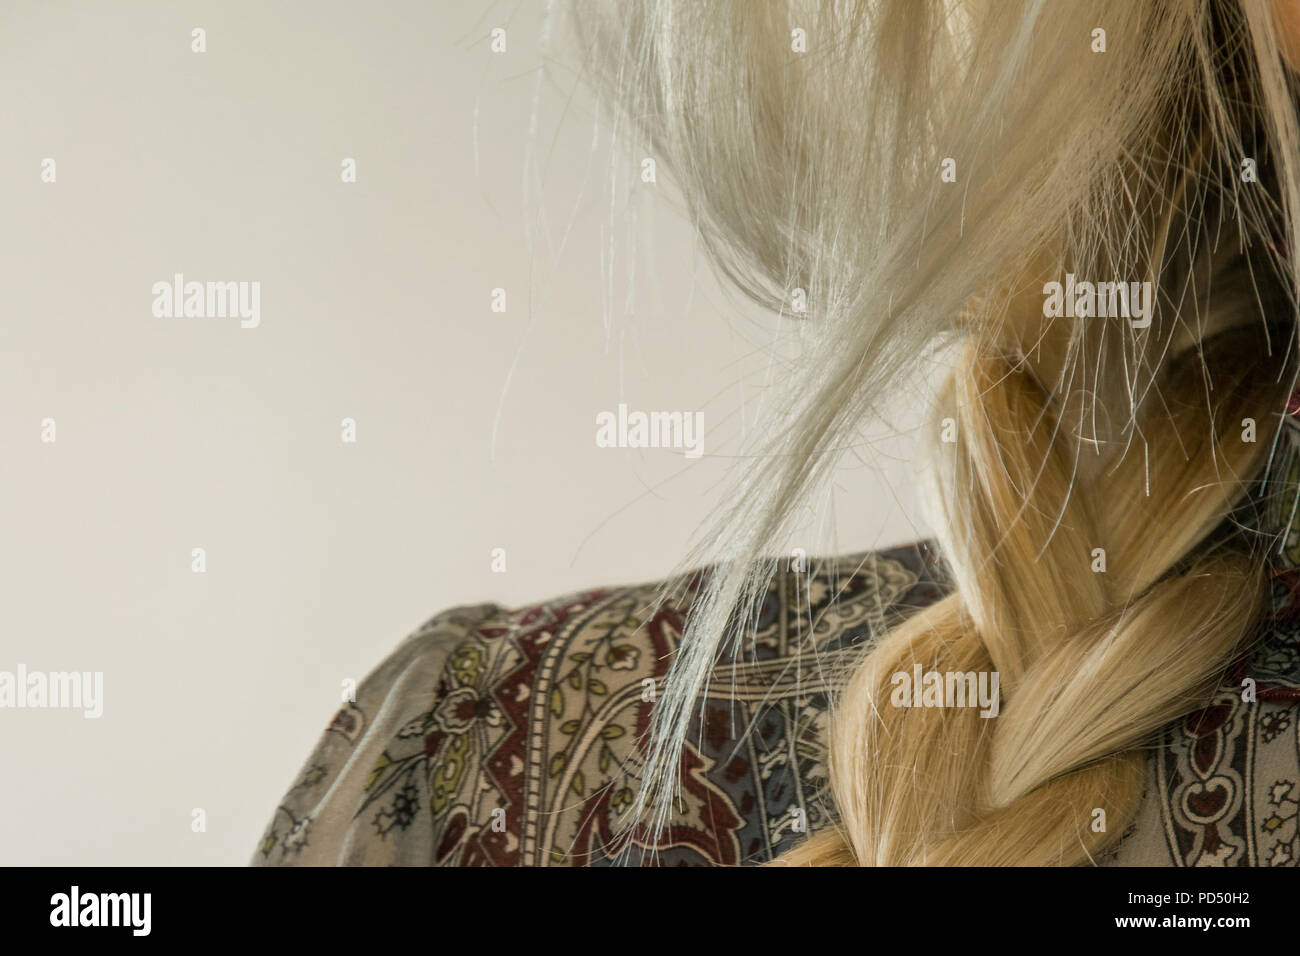 Concept de coiffure élégante. Close-up of a blond woman par tresse de cheveux. Tous les jours élégant hairstyle Banque D'Images